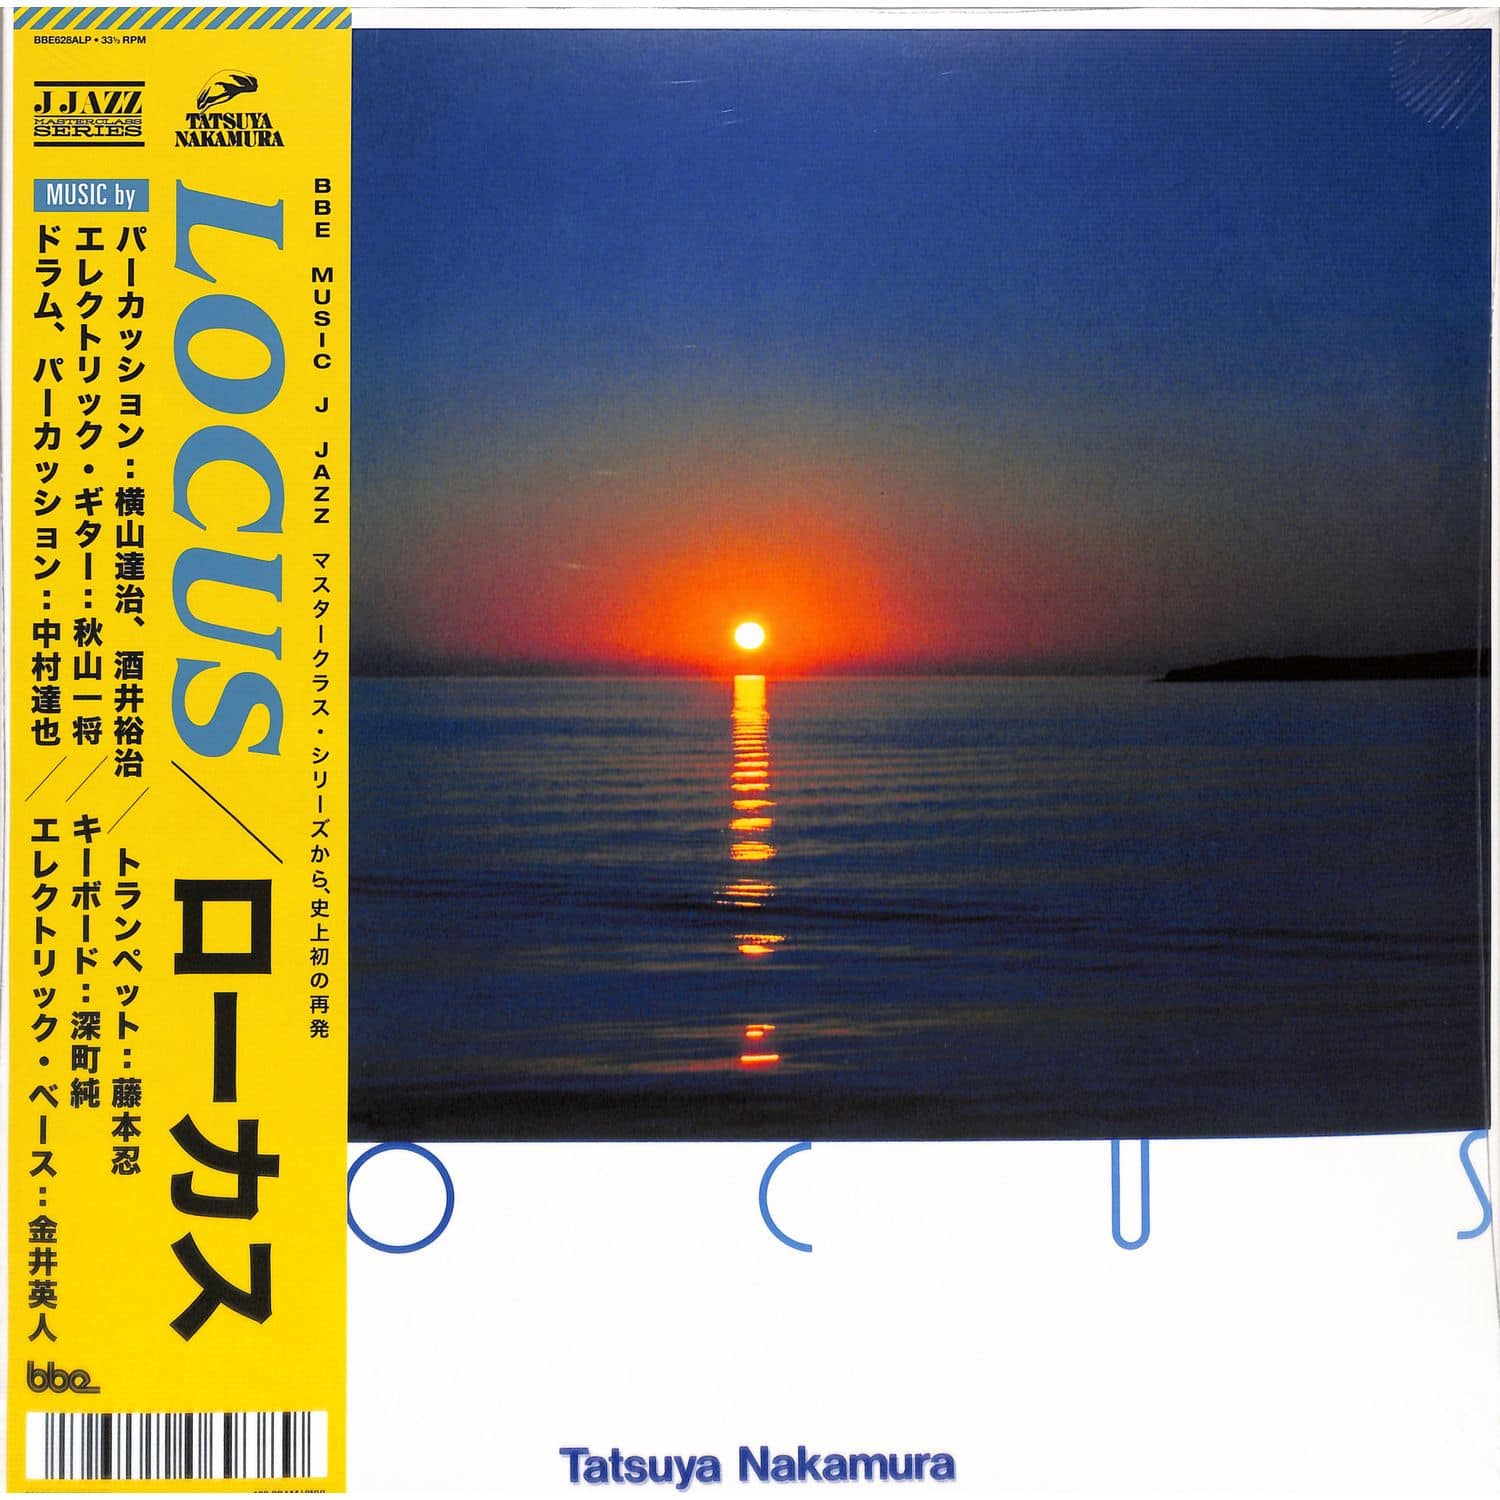 Tatsuya Nakamura - LOCUS 